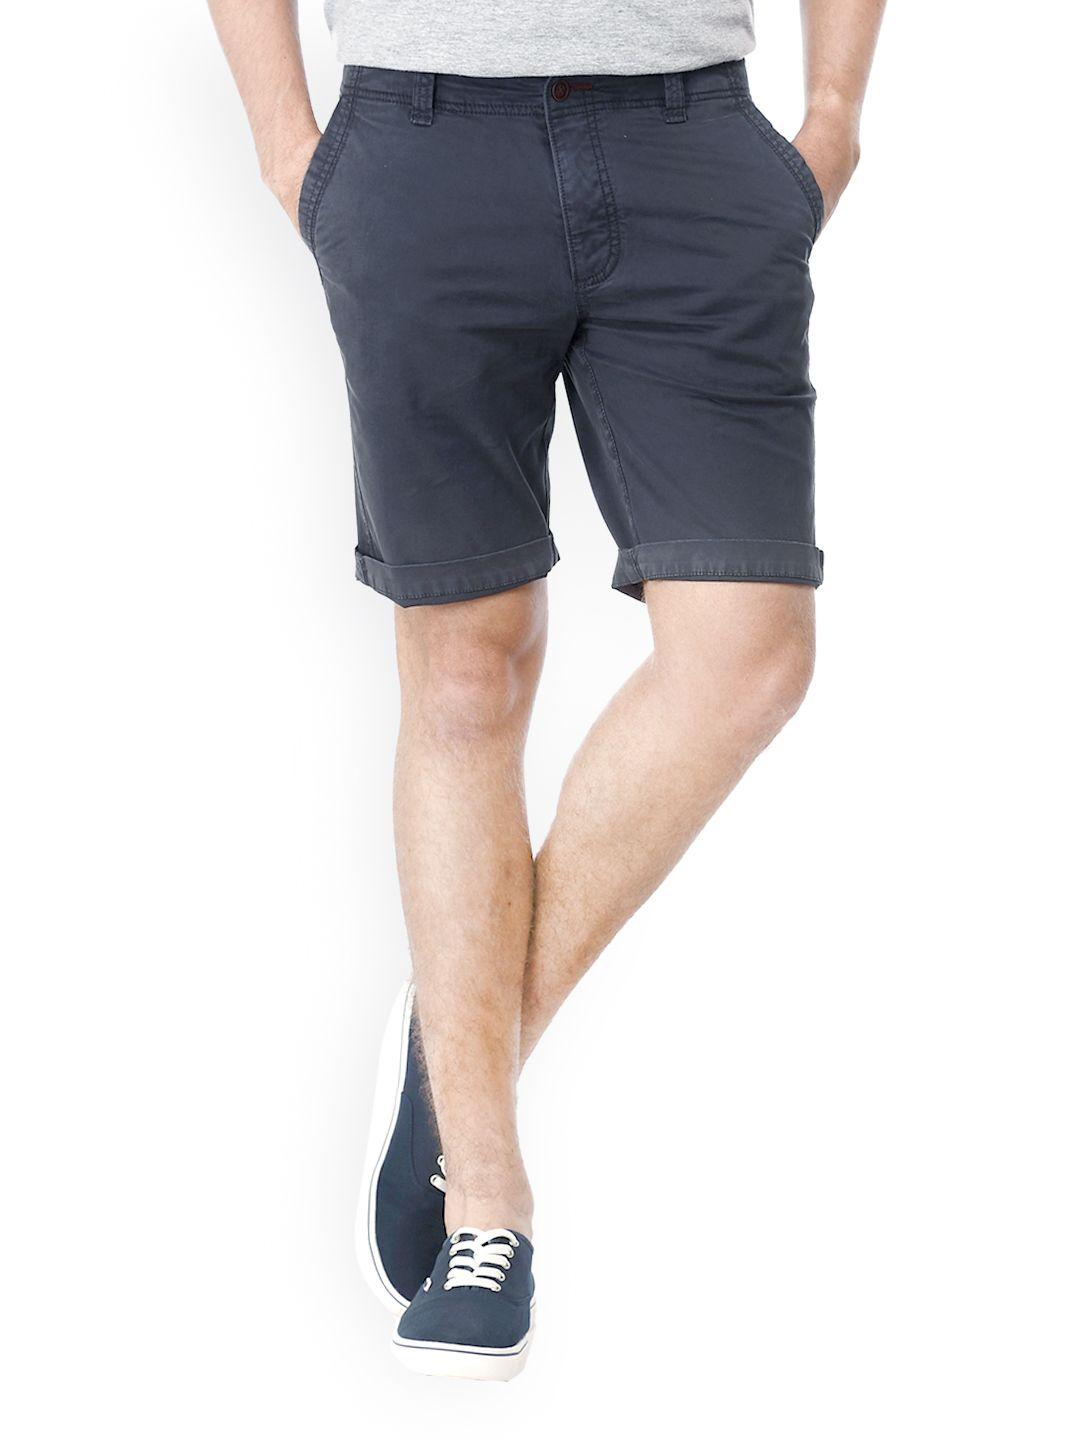 basics men dark grey shorts